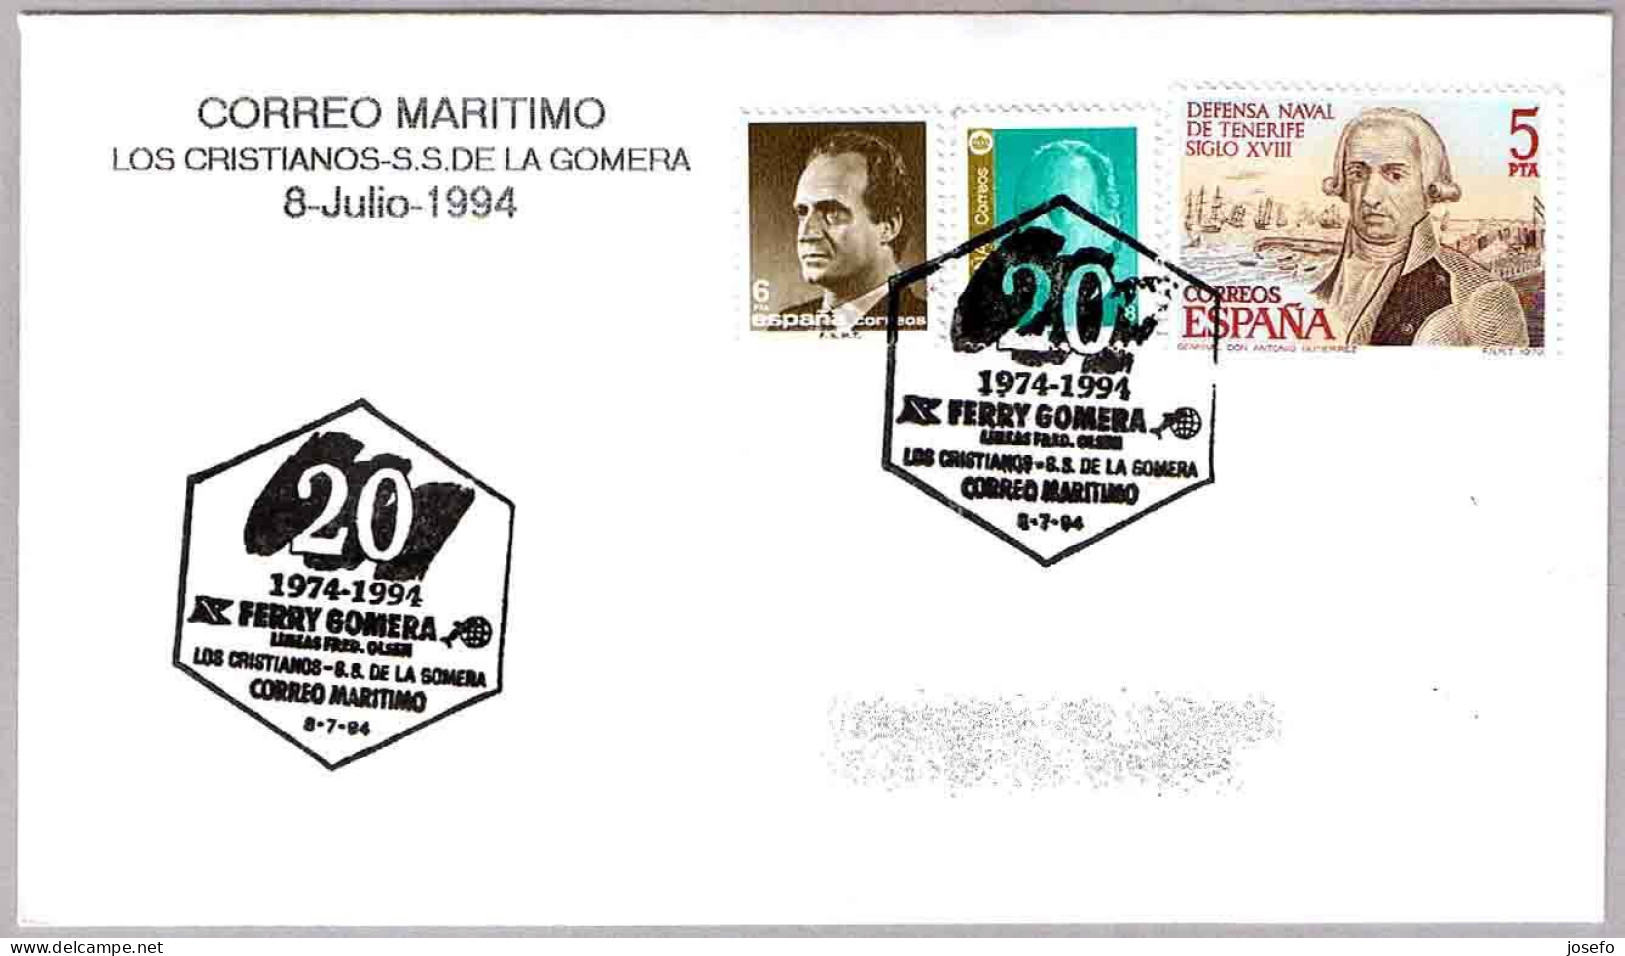 CORREO MARITIMO Los Cristianos - S.S.de La Gomera. FERRY GOMERA. 1994. Canarias - Poste